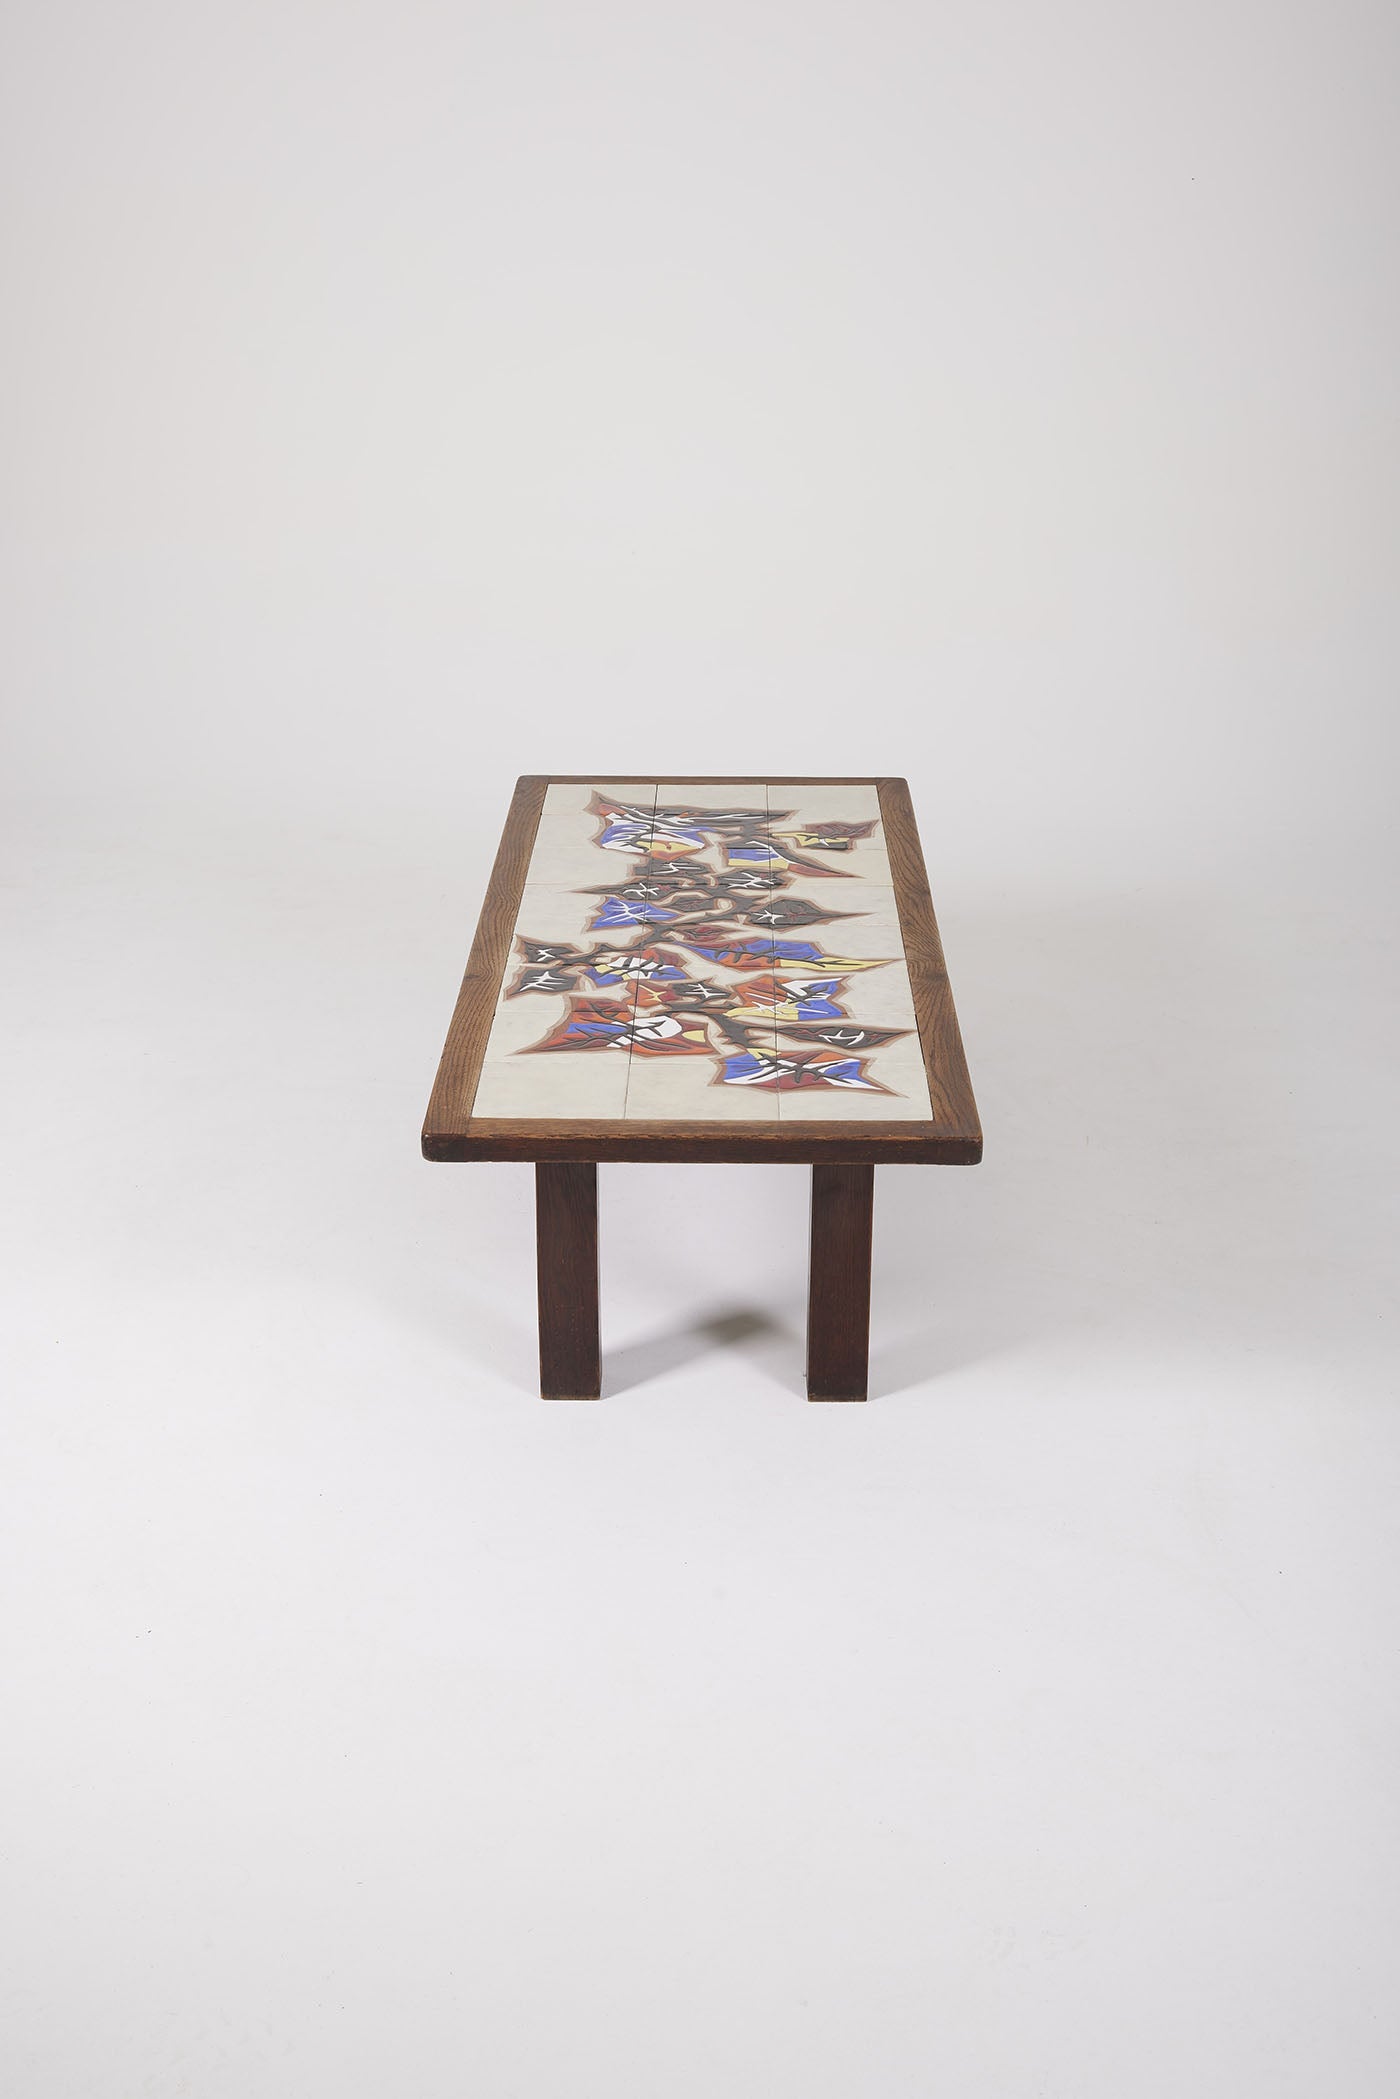 Table basse en céramique du céramiste français Jean Lurçat (1892-1966) datant des années 50. Le plateau est en céramique blanche à motif floraux jaune, rouge et bleu, la structure est en bois. Très bon état.